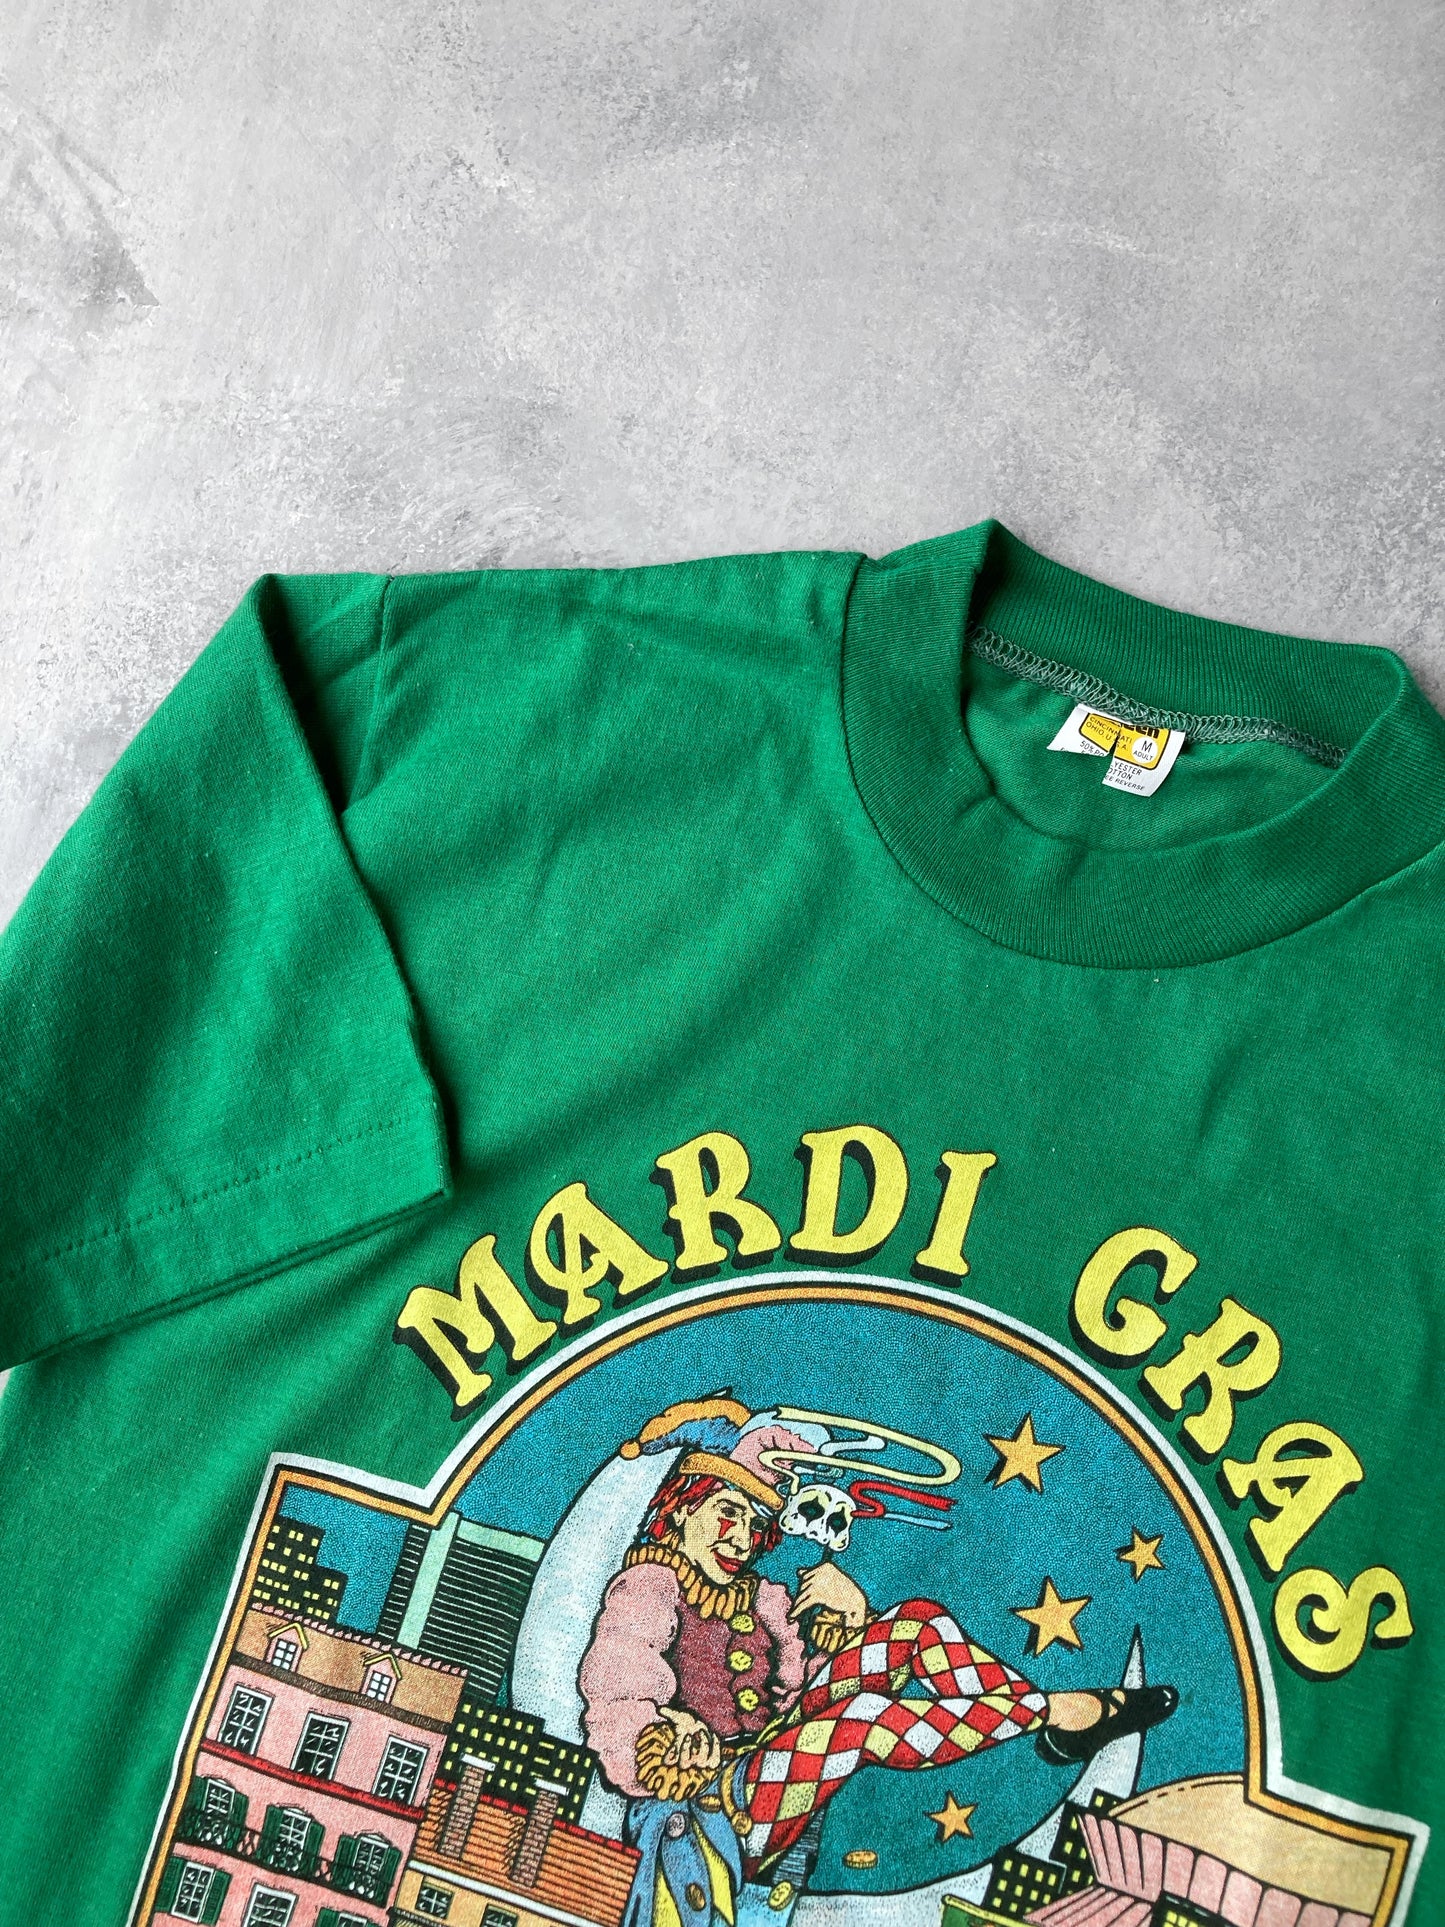 Mardi Gras T-Shirt '83 - Small / Medium